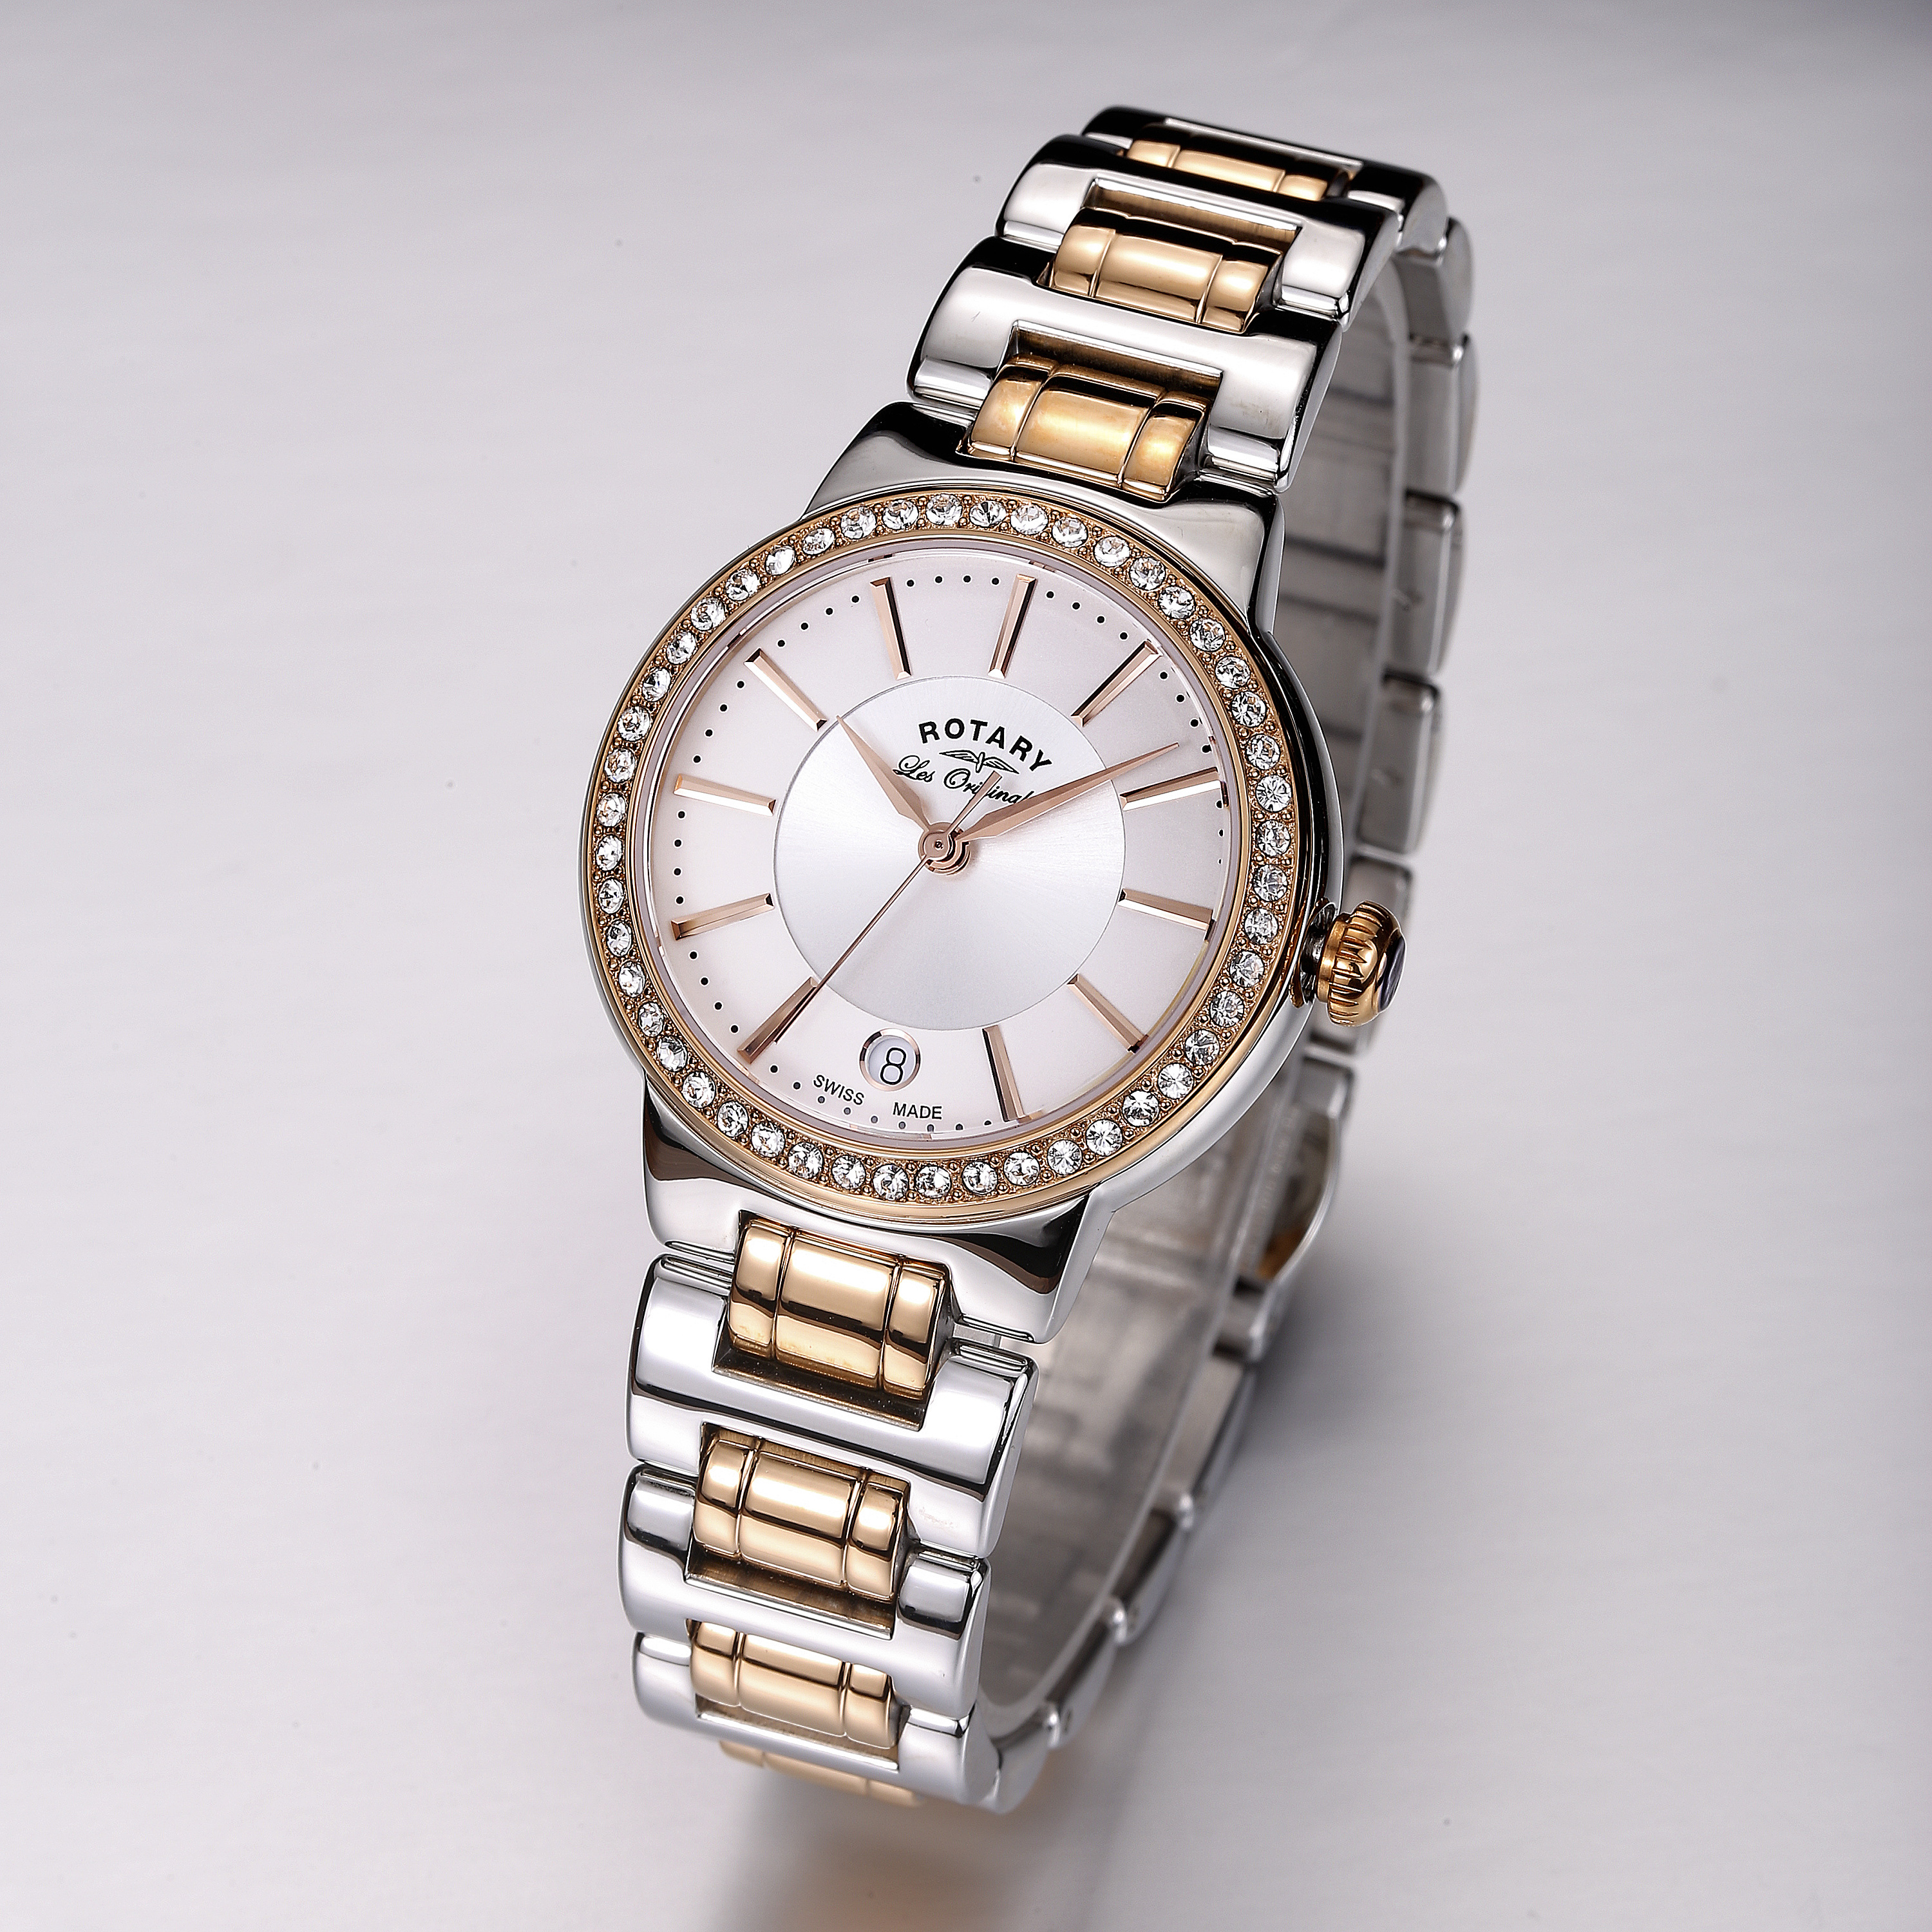 罗西尼(ROSSINI)手表启迪系列商务风格情侣对表钢带女士机械腕表5666（特价表）_罗西尼